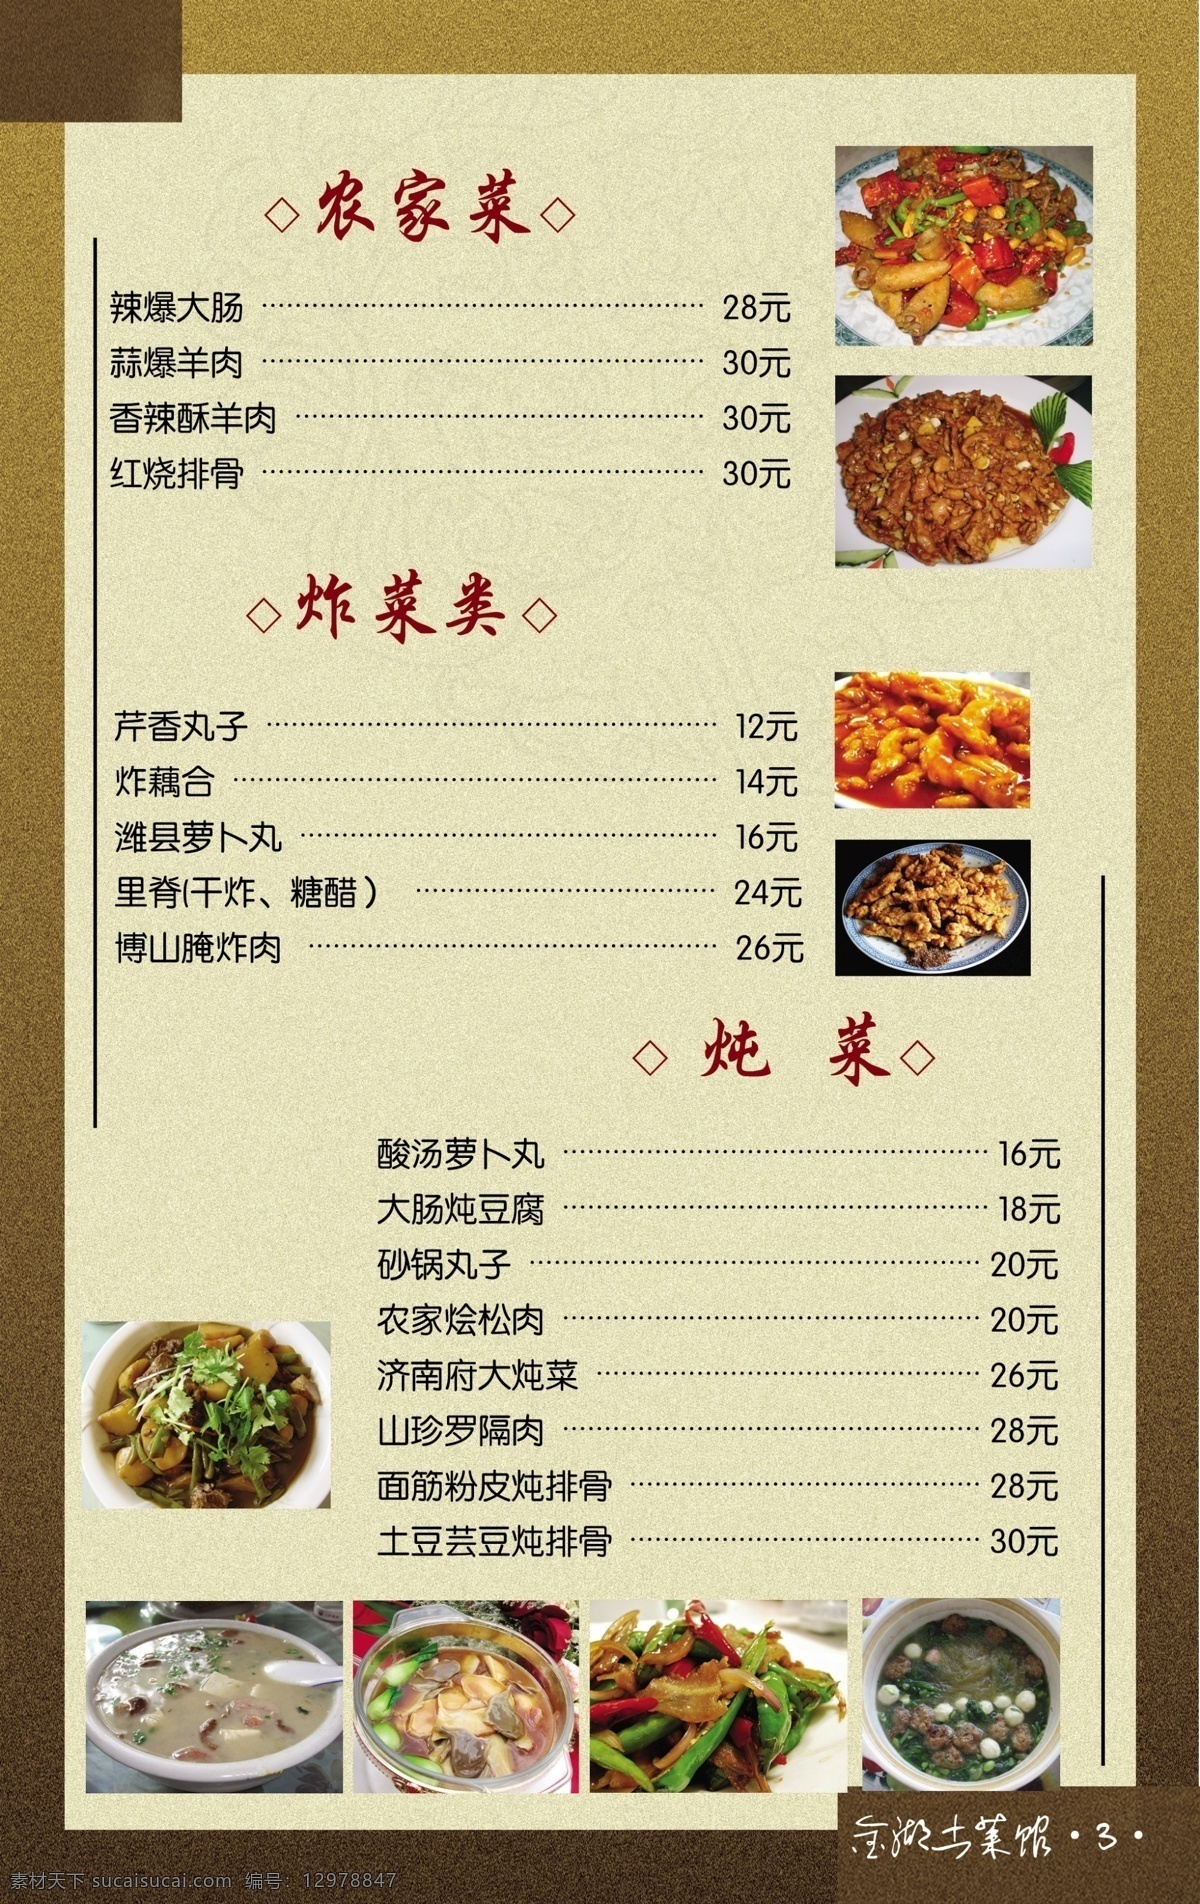 菜单 菜谱 菜单素材下载 菜单模板下载 中国风 简约 简单 大方 简洁 菜单菜谱 广告设计模板 源文件 黄色